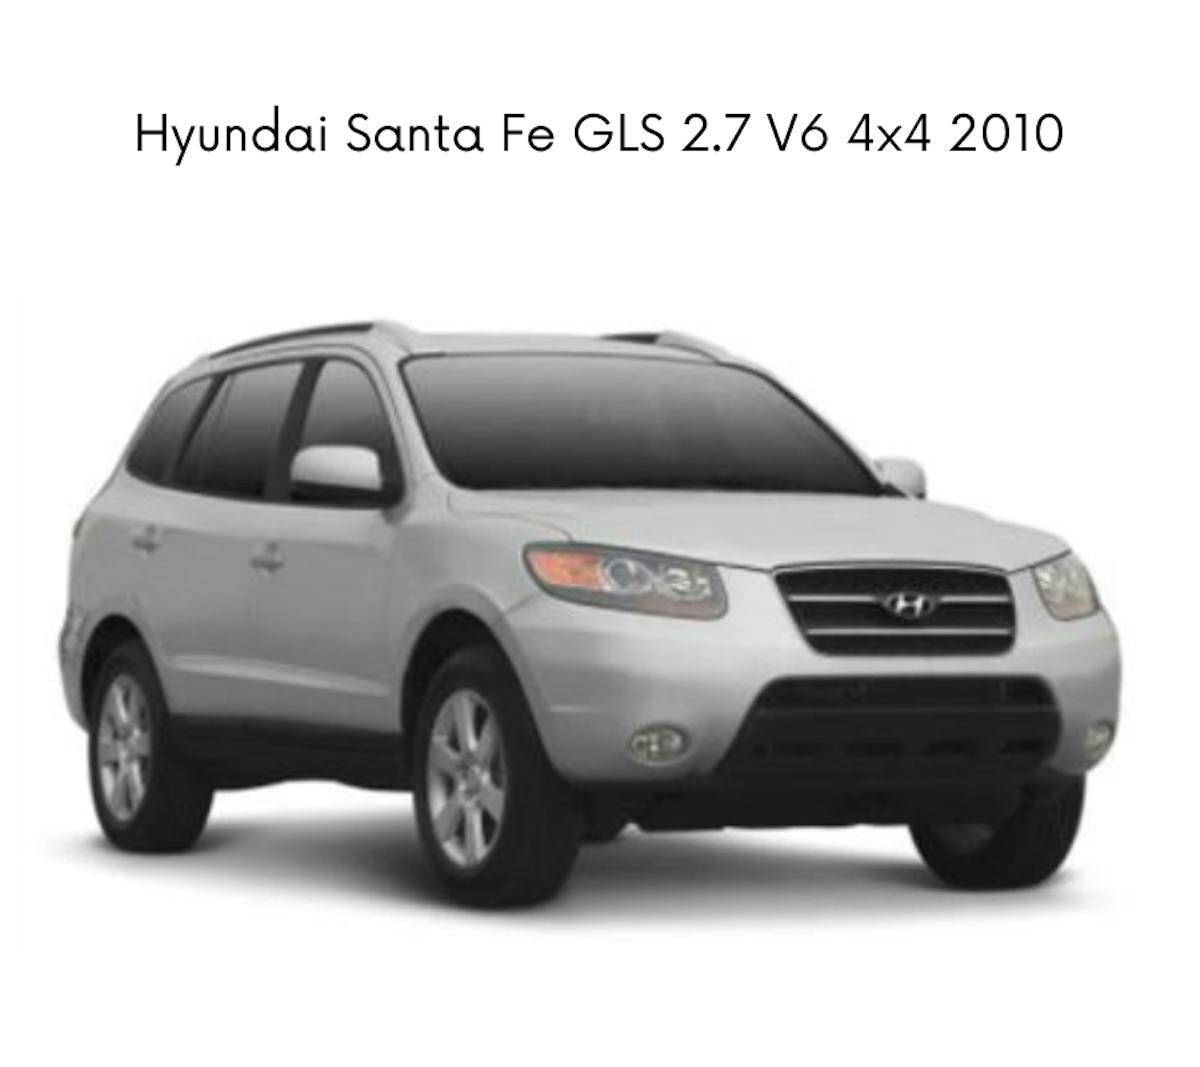 Hyundai Santa Fé GLS 2.7 V6 4x4 TipTronic ano 2010